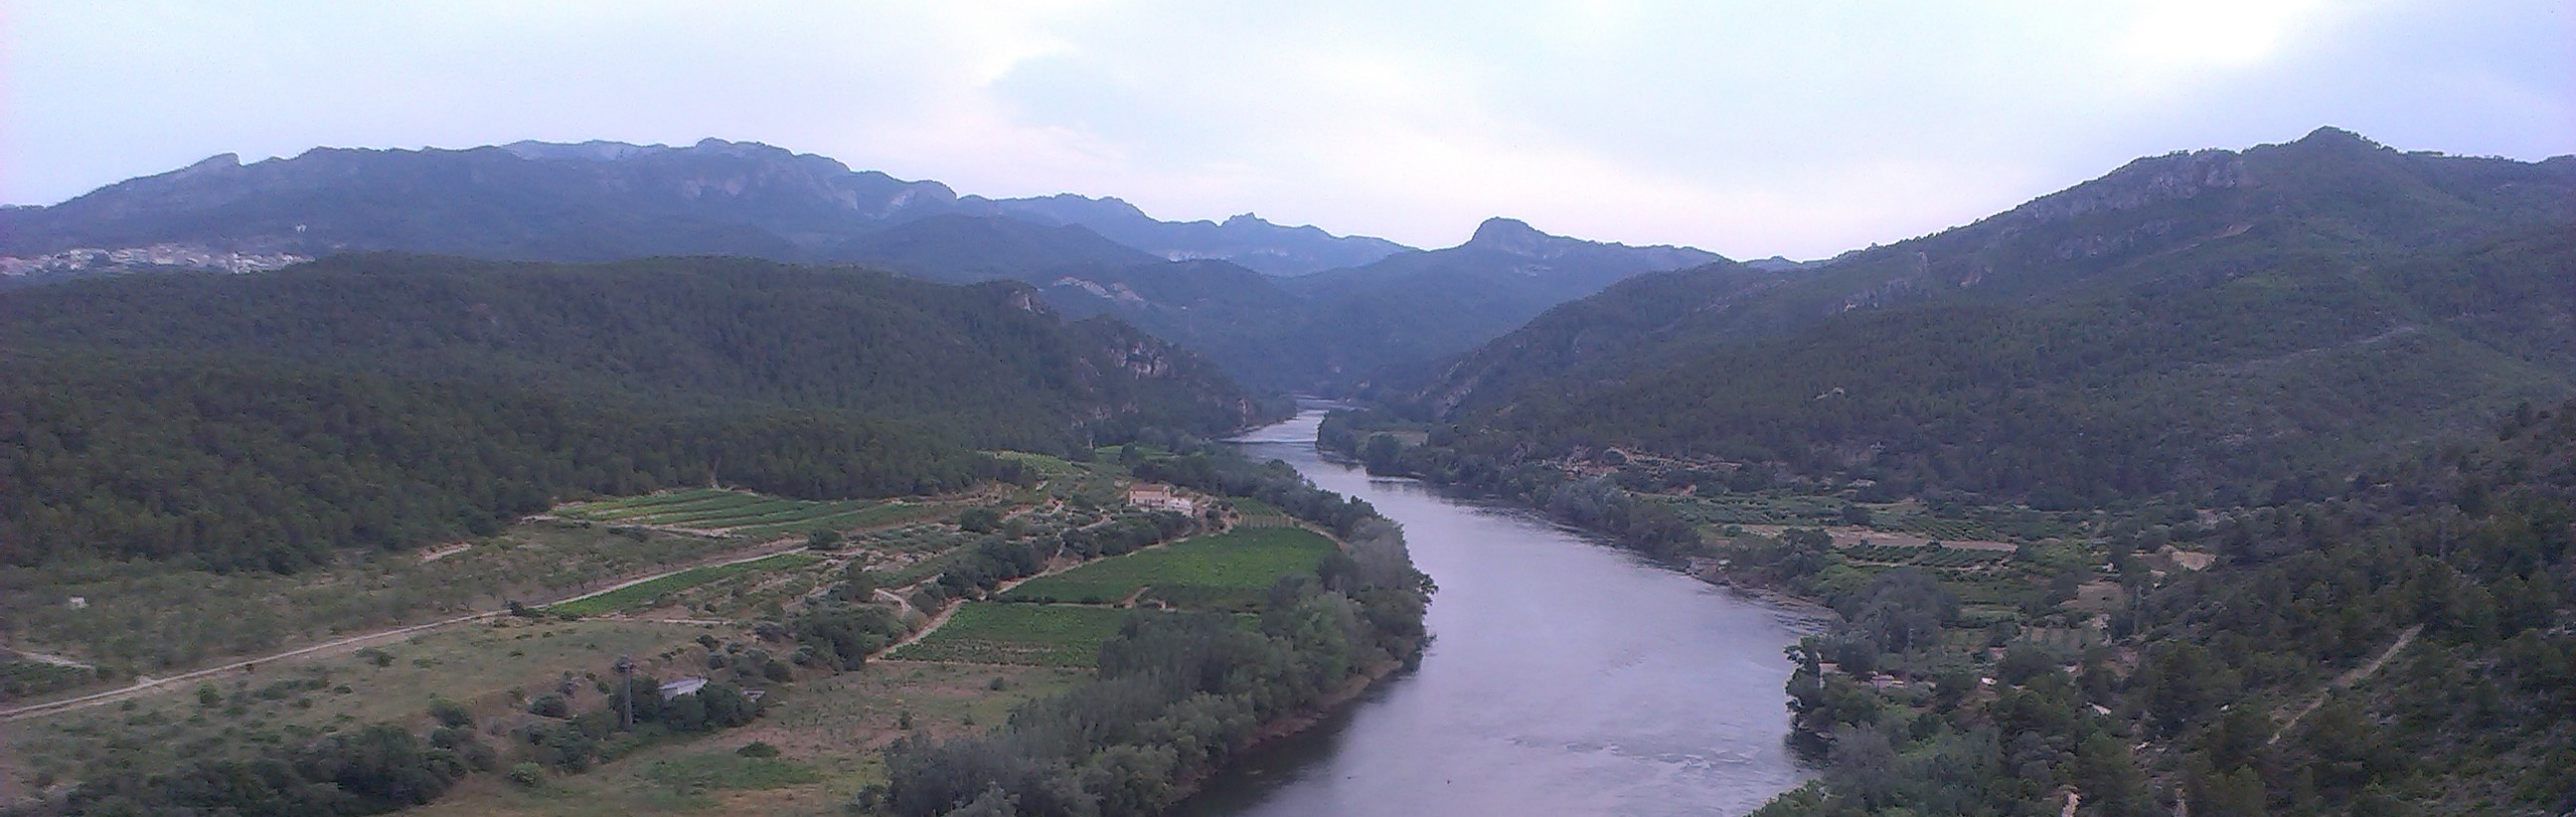 El Ayuntamiento de Zaragoza y la Confederación Hidrográfica del Ebro firman un protocolo